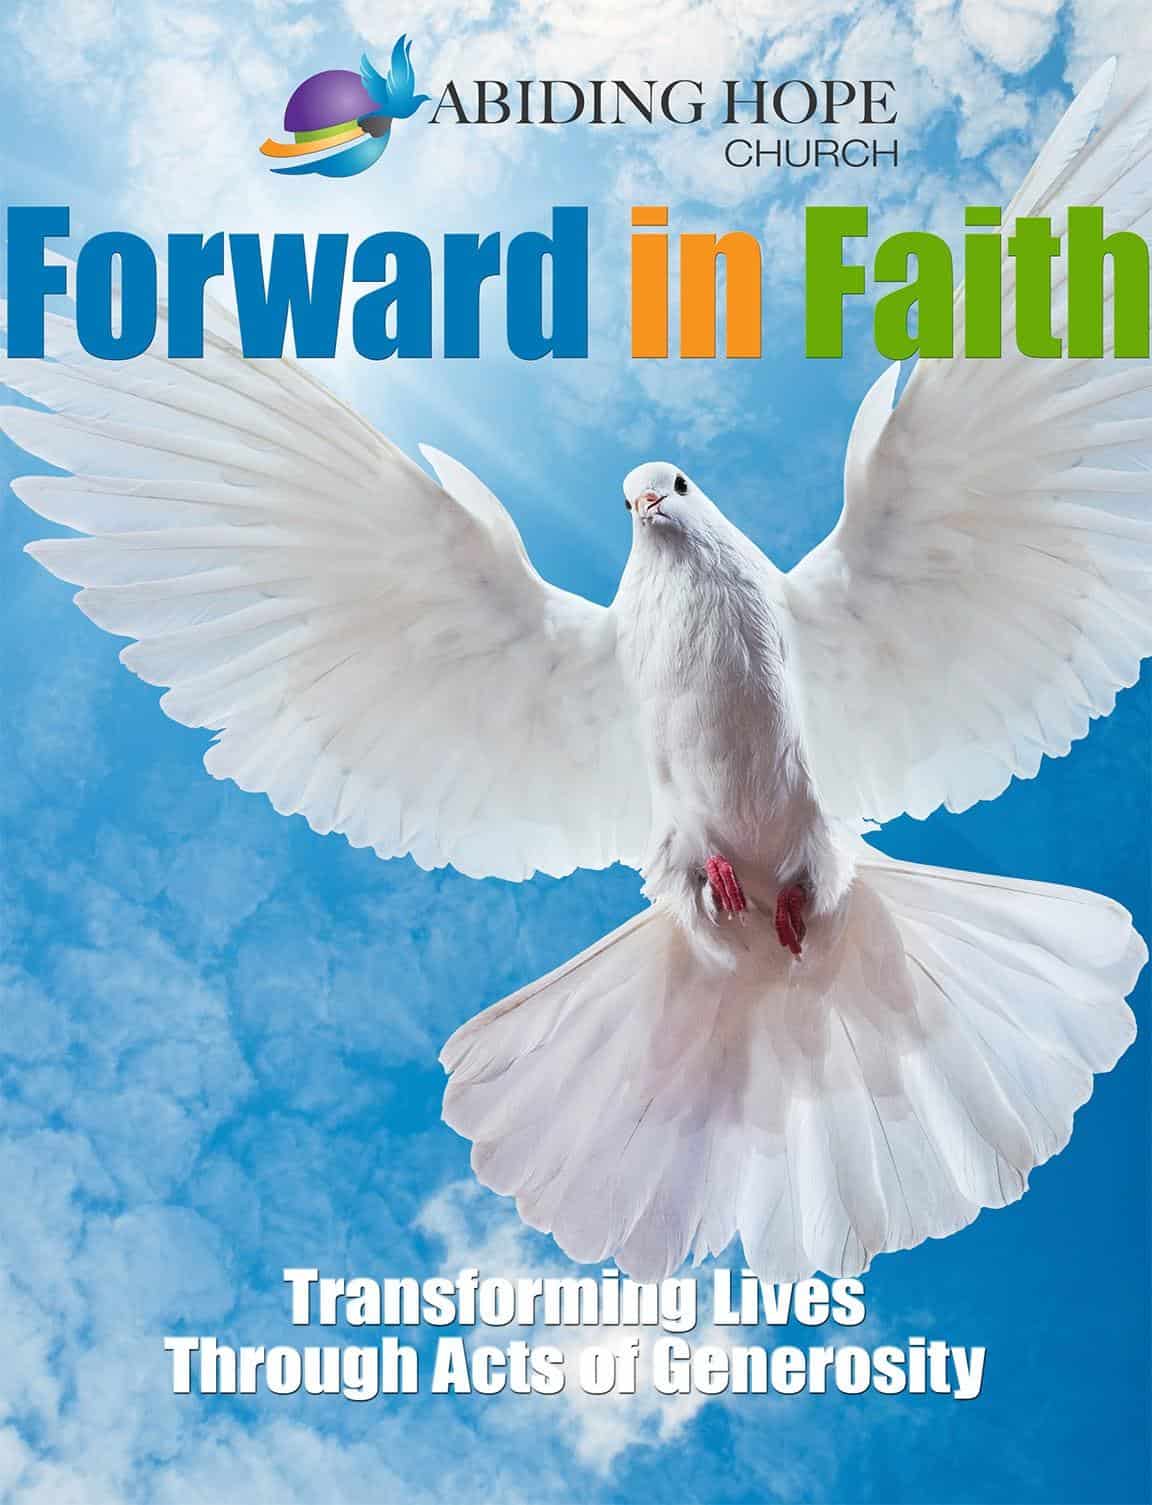 WOW Factor Digital Marketing Agency - Abiding Hope Forward in Faith